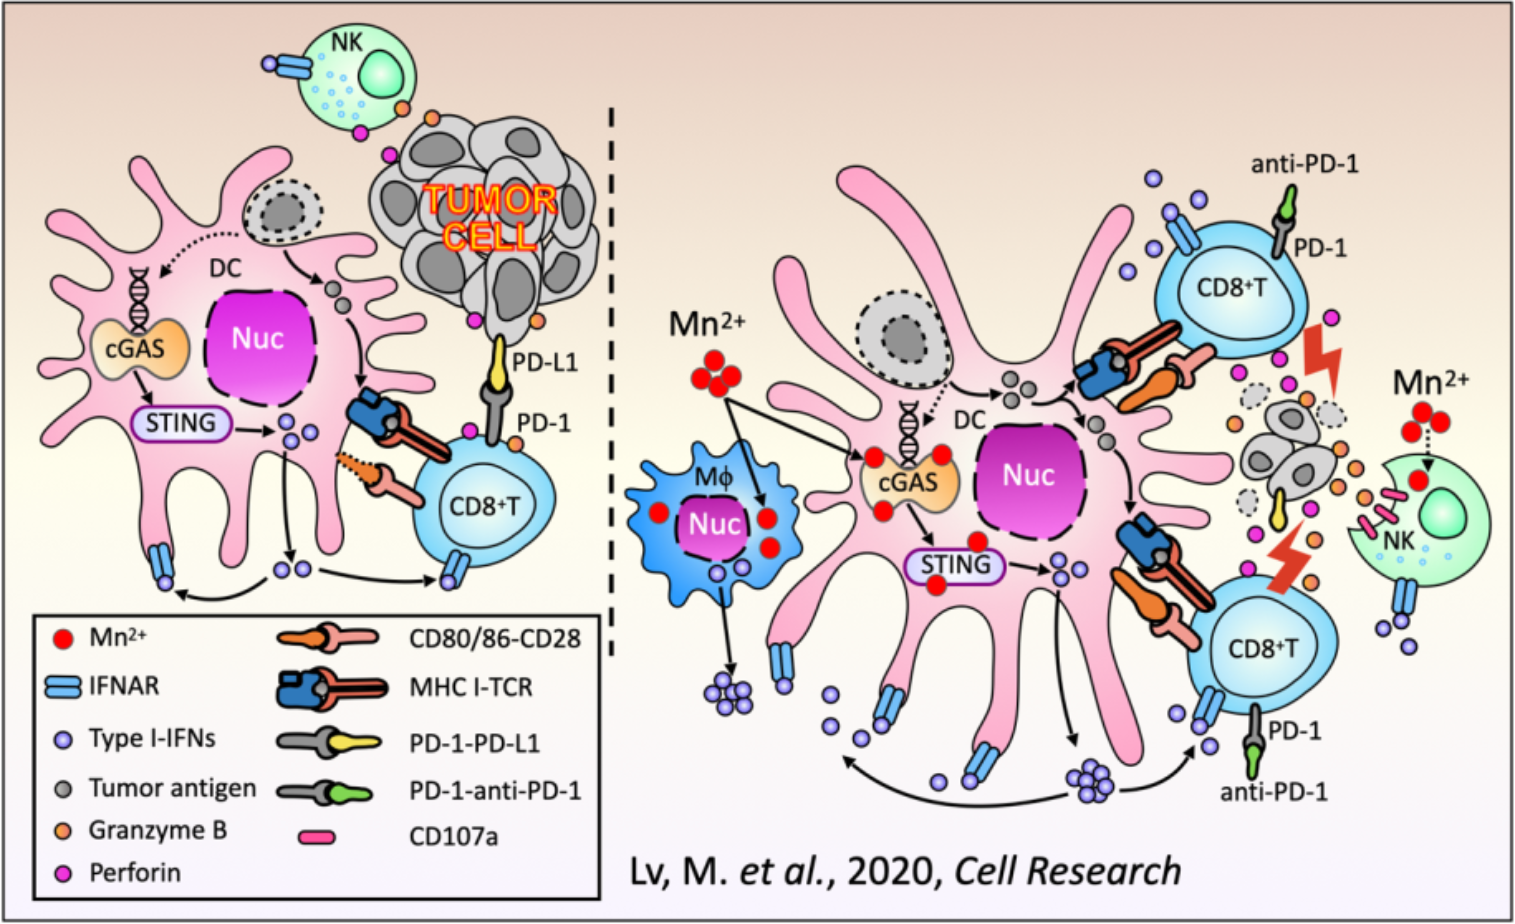 Cell Res： “锰免疗法”——锰离子可以提高肿瘤<font color="red">免疫治疗</font>的应答率